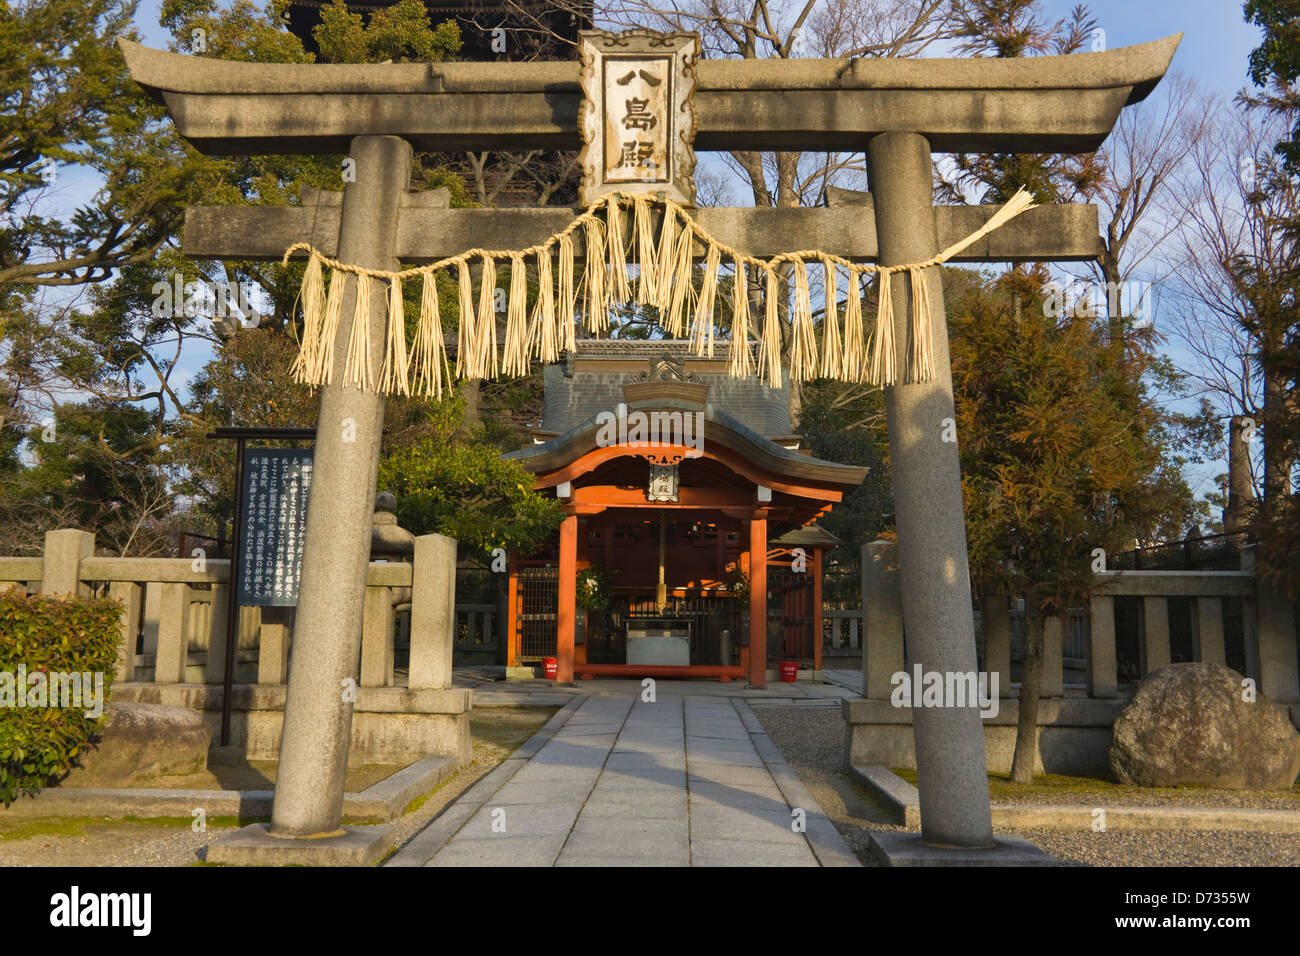 Toji Temple, Kyoto, Japan Stock Photo